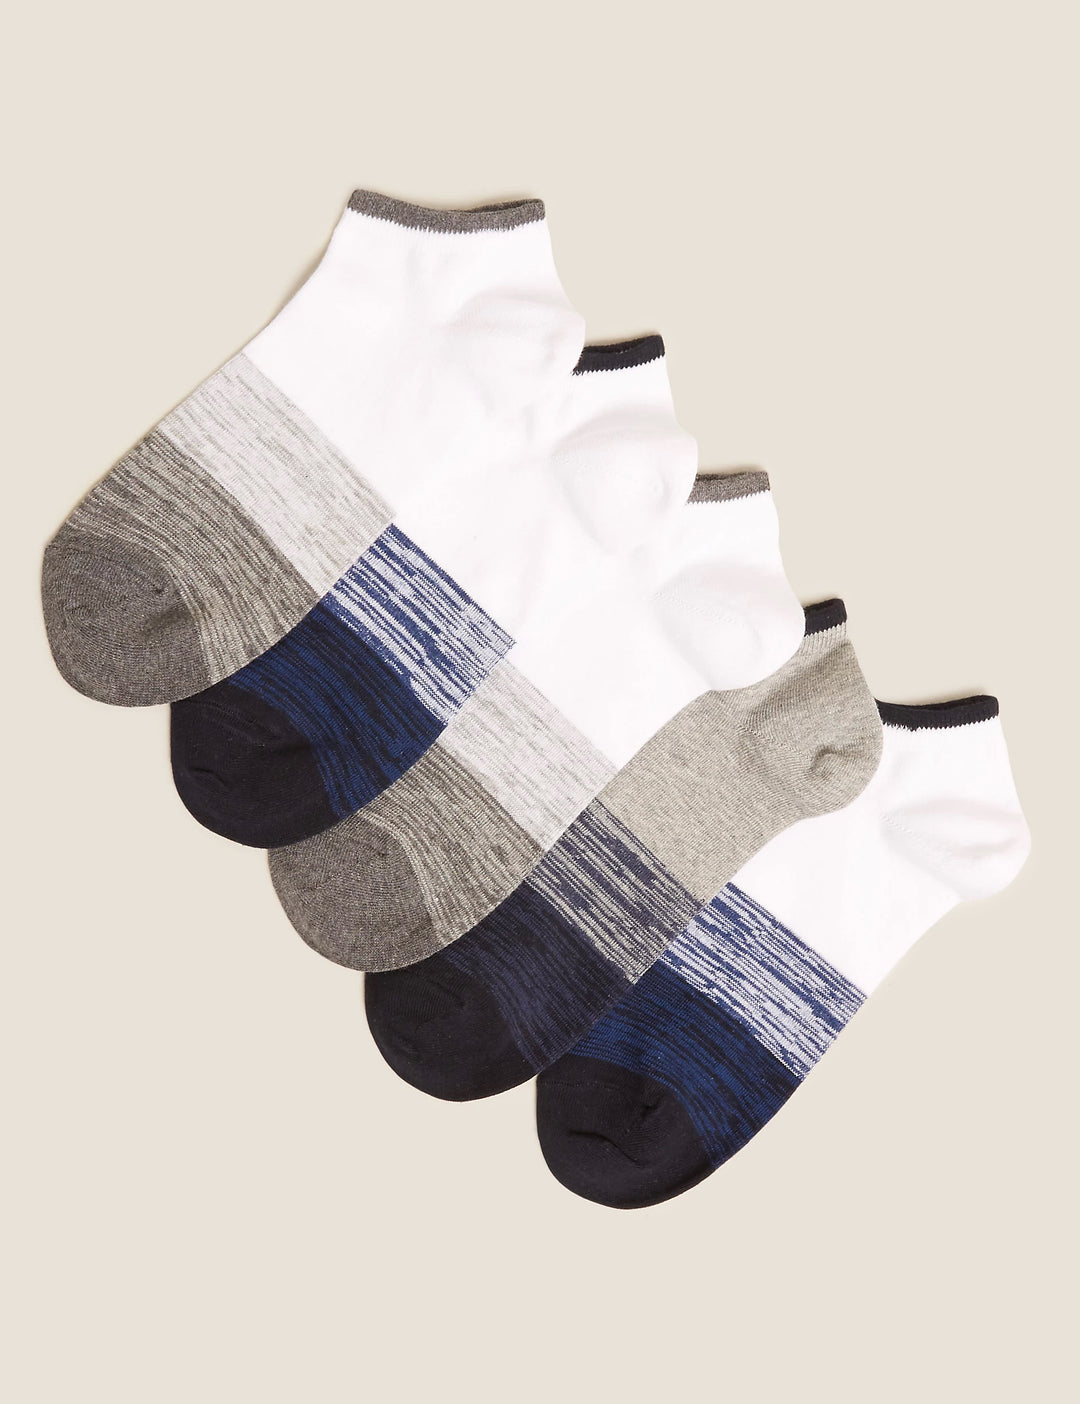 M & S Men Cool & Fresh 5Pair Cotton Anckle Socks T10/0391